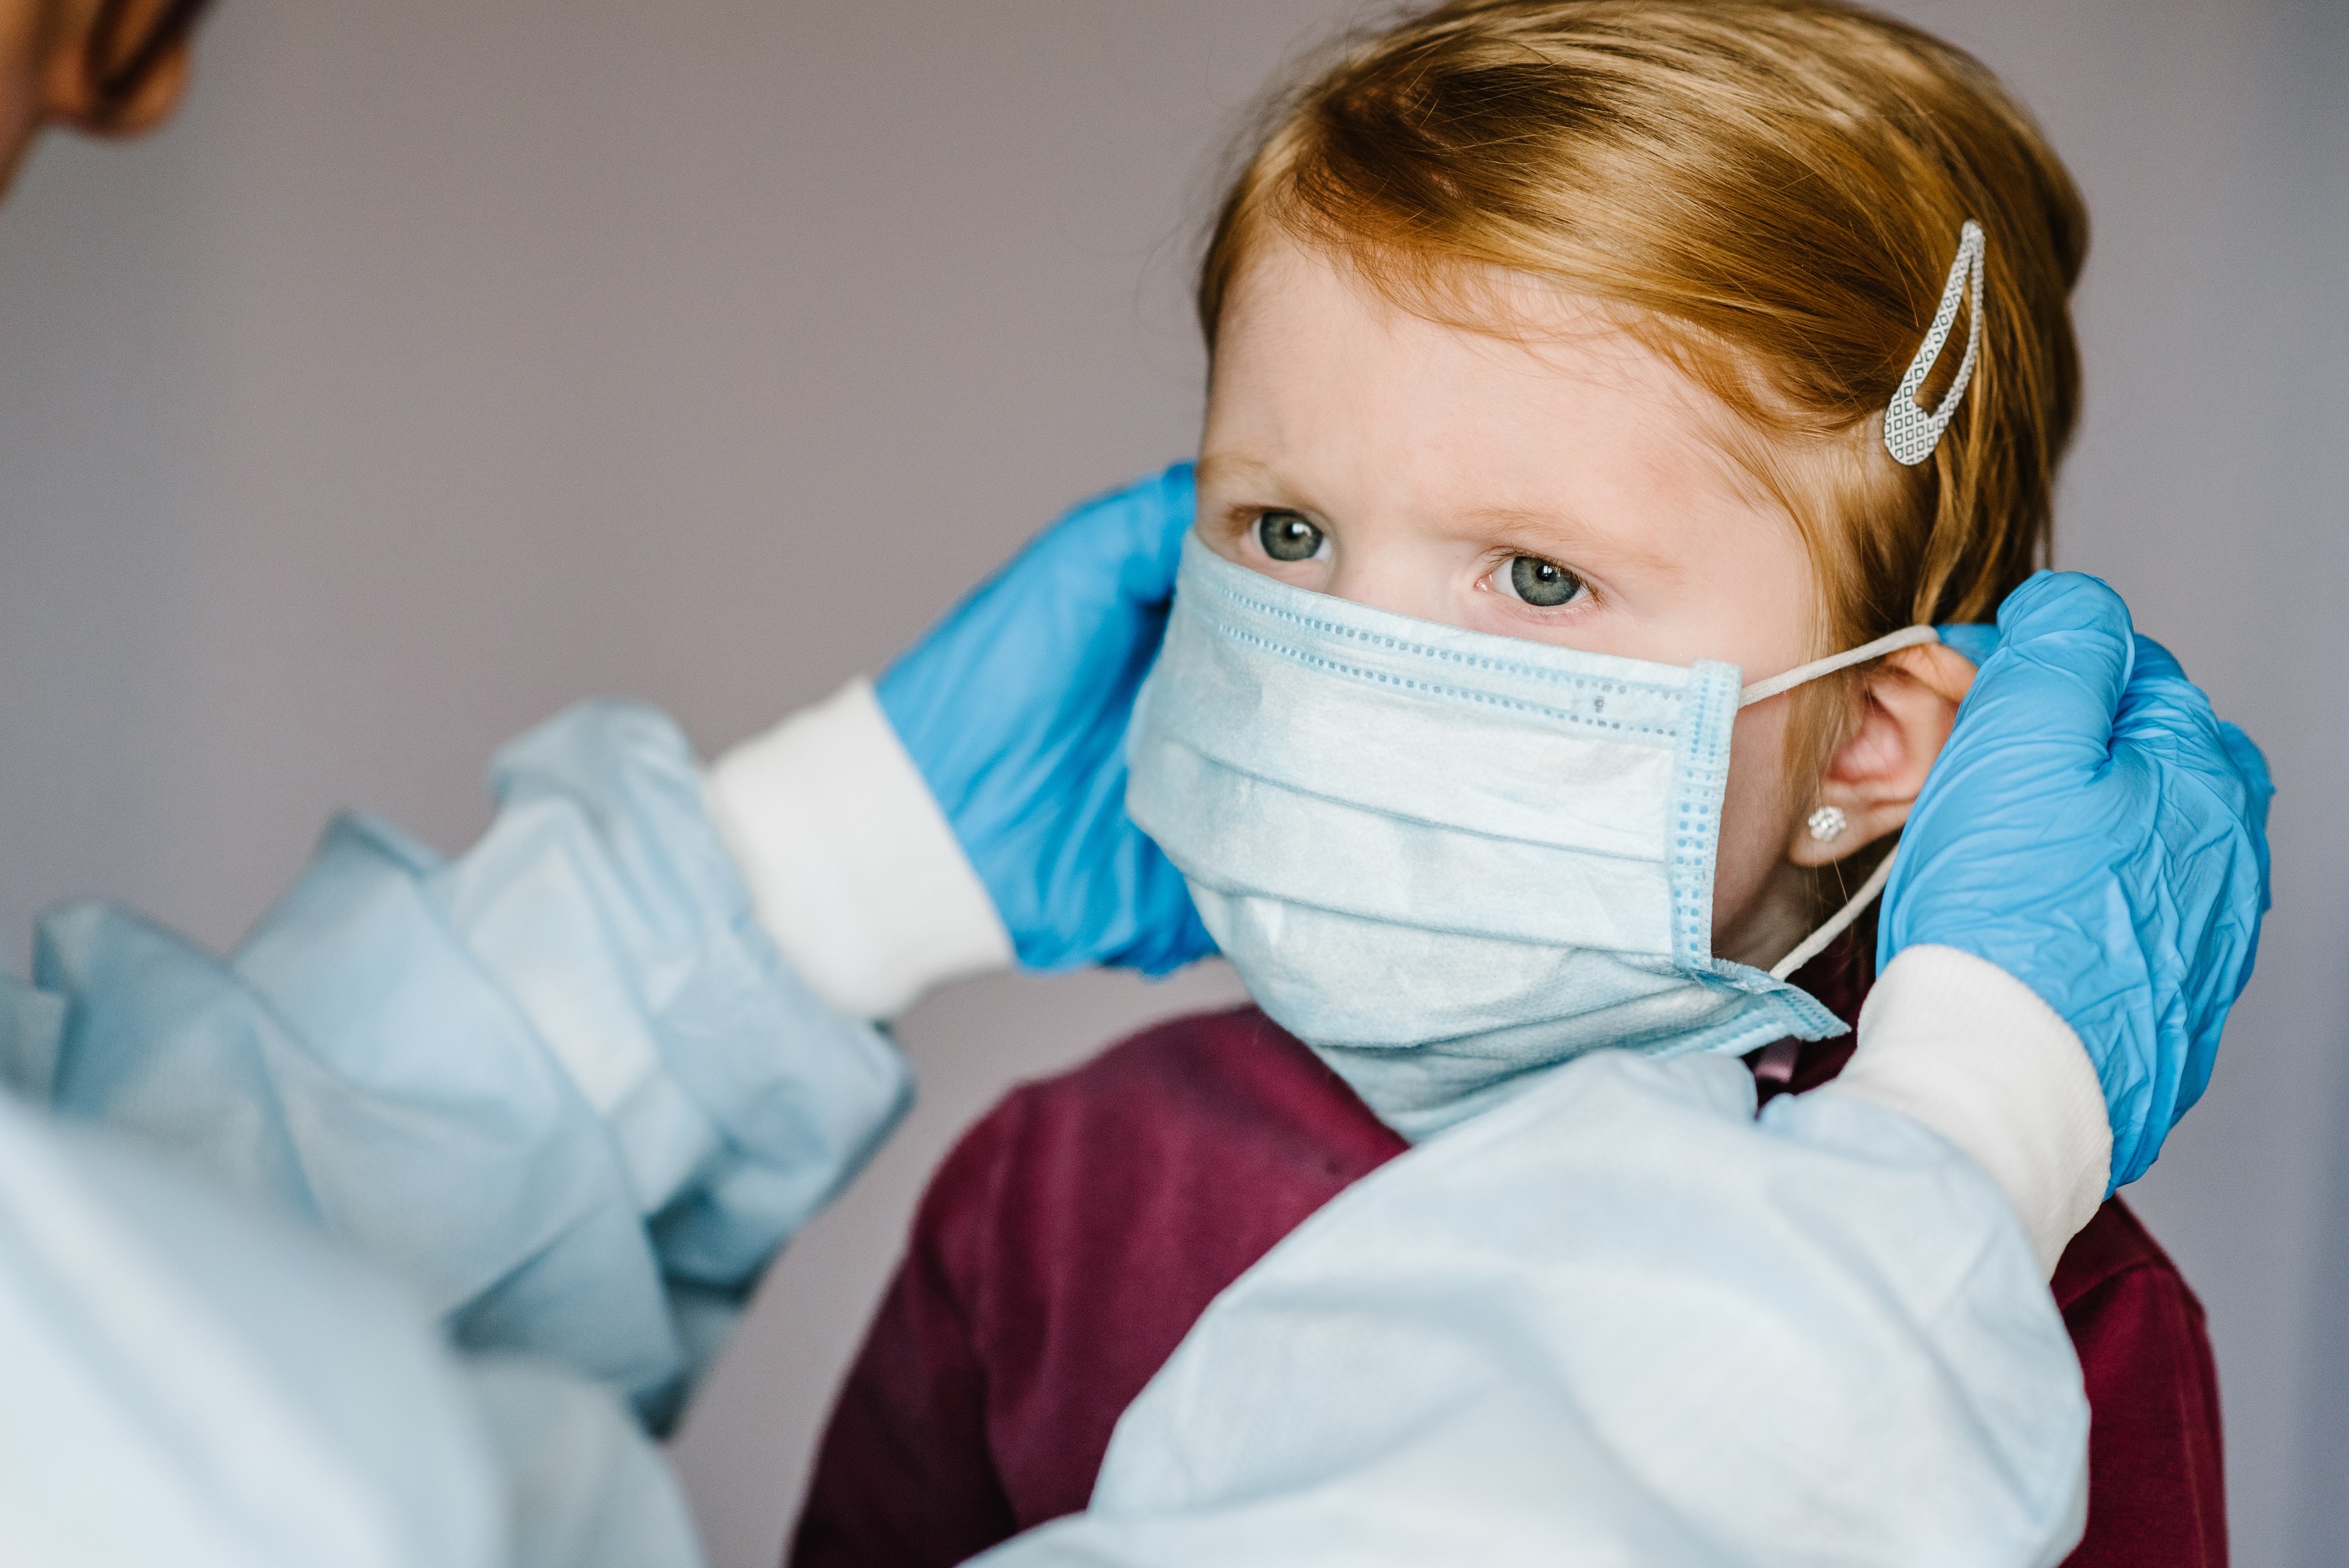 Le PIMS est l'une des complications possibles de l'infection à SARS-CoV-2 chez les enfants. © Photographie Sergii Sobolevskyi, Shutterstock